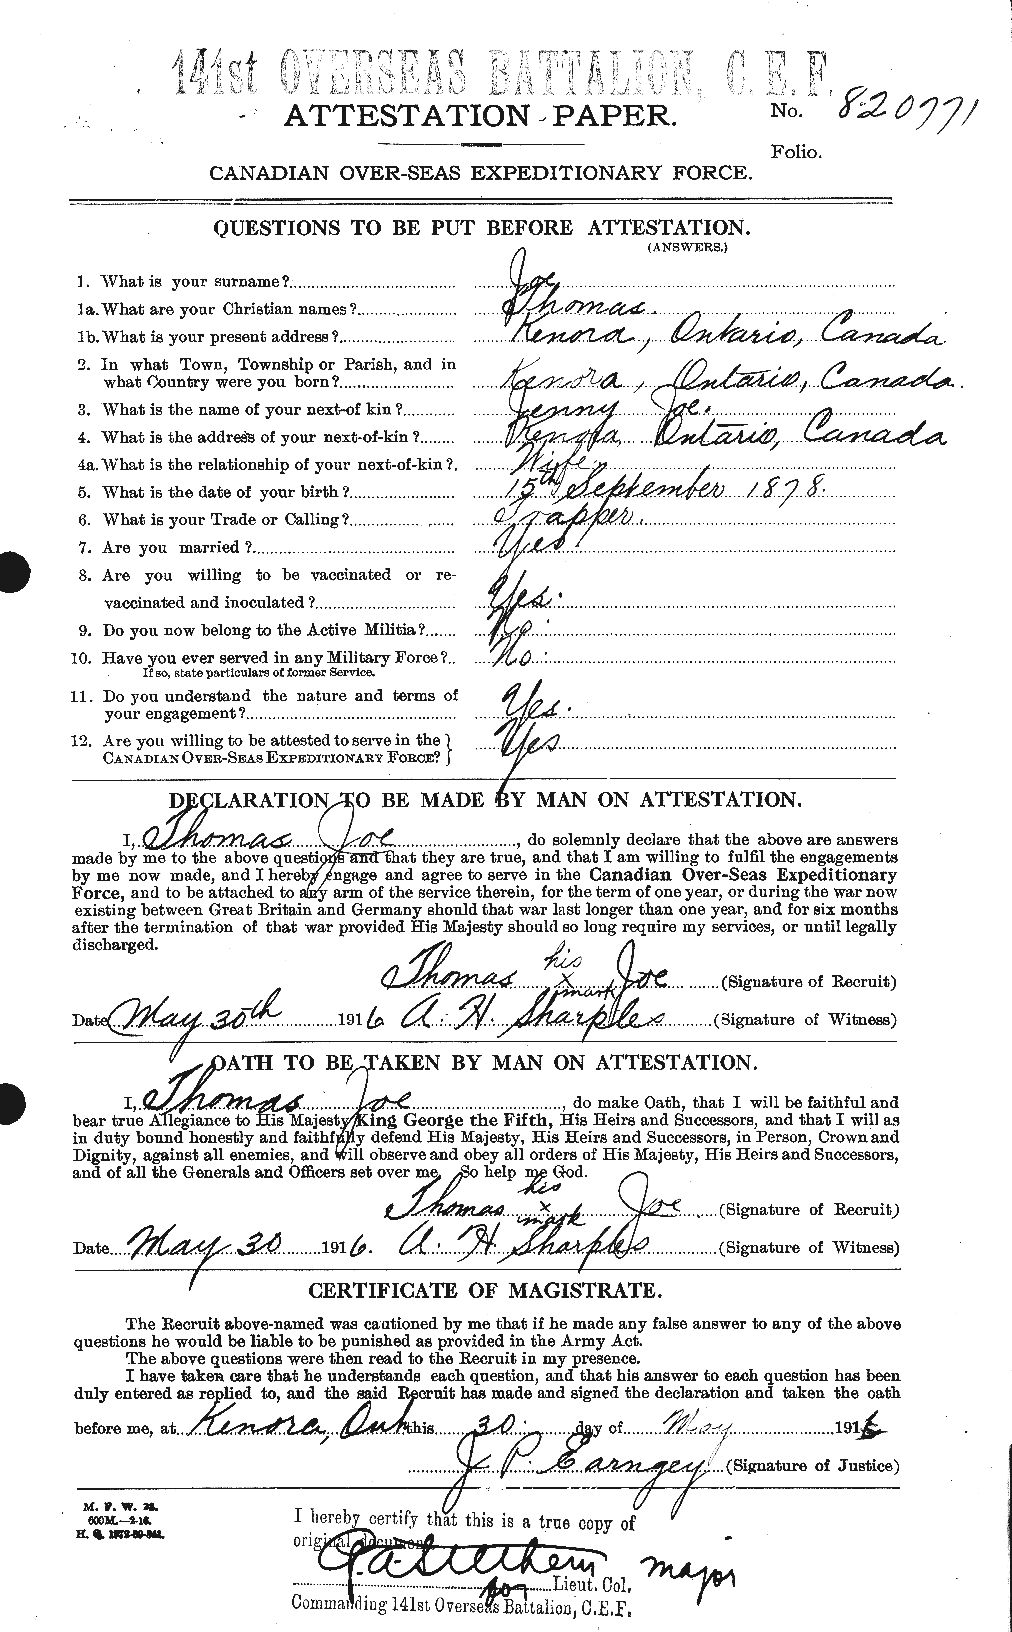 Dossiers du Personnel de la Première Guerre mondiale - CEC 420125a